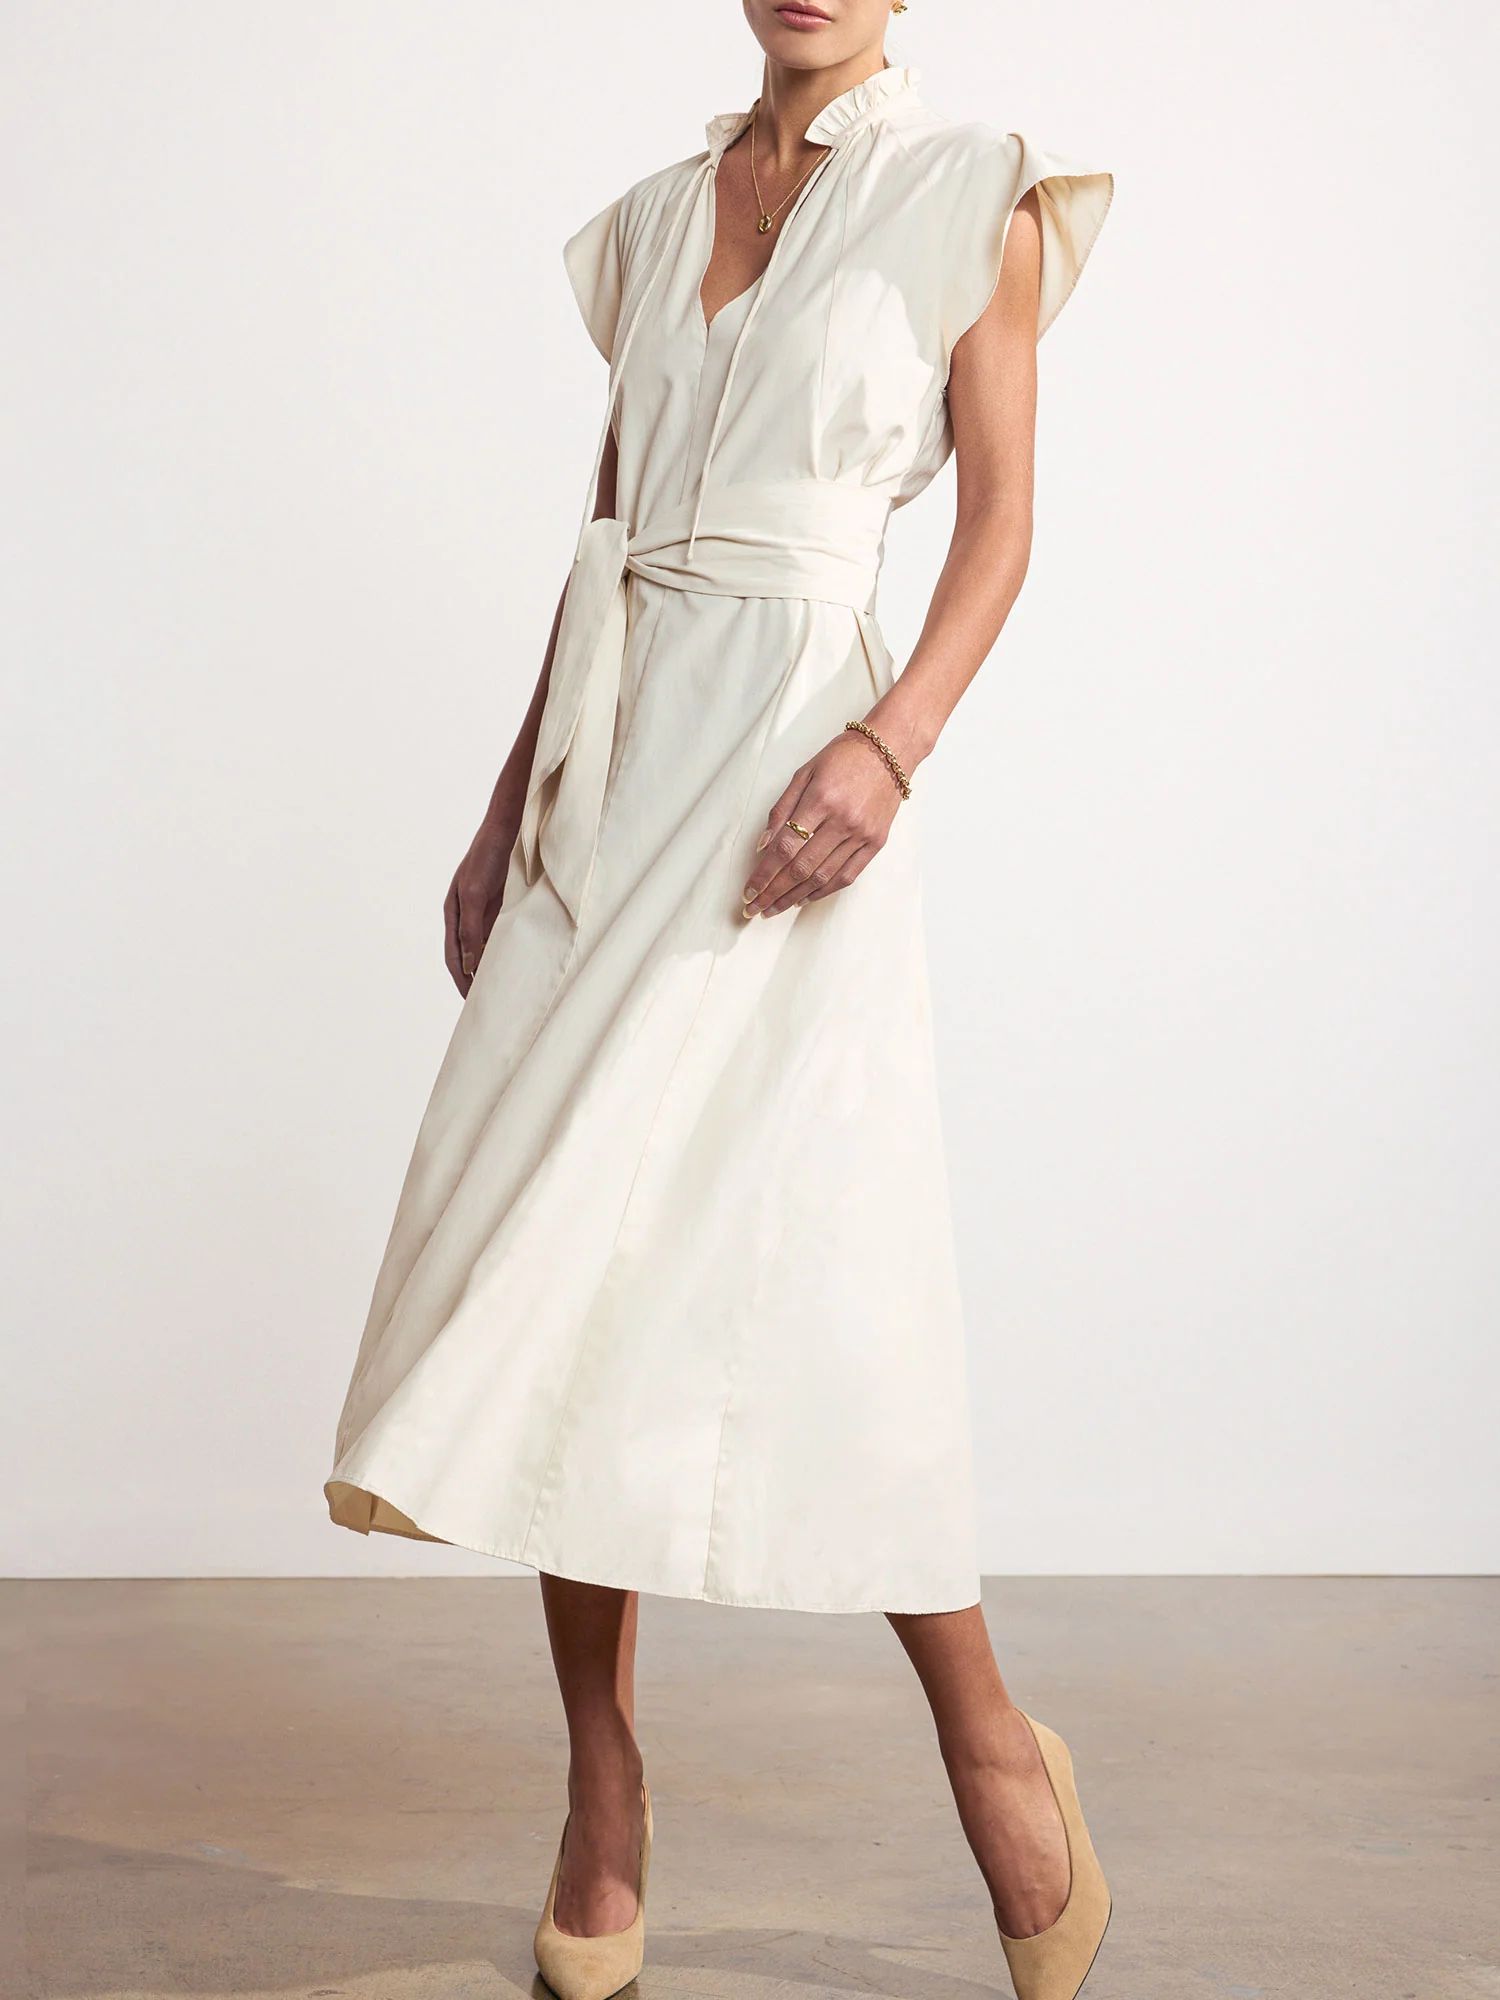 Brochu Walker | Women's Newport Midi Dress in Calico | Brochu Walker